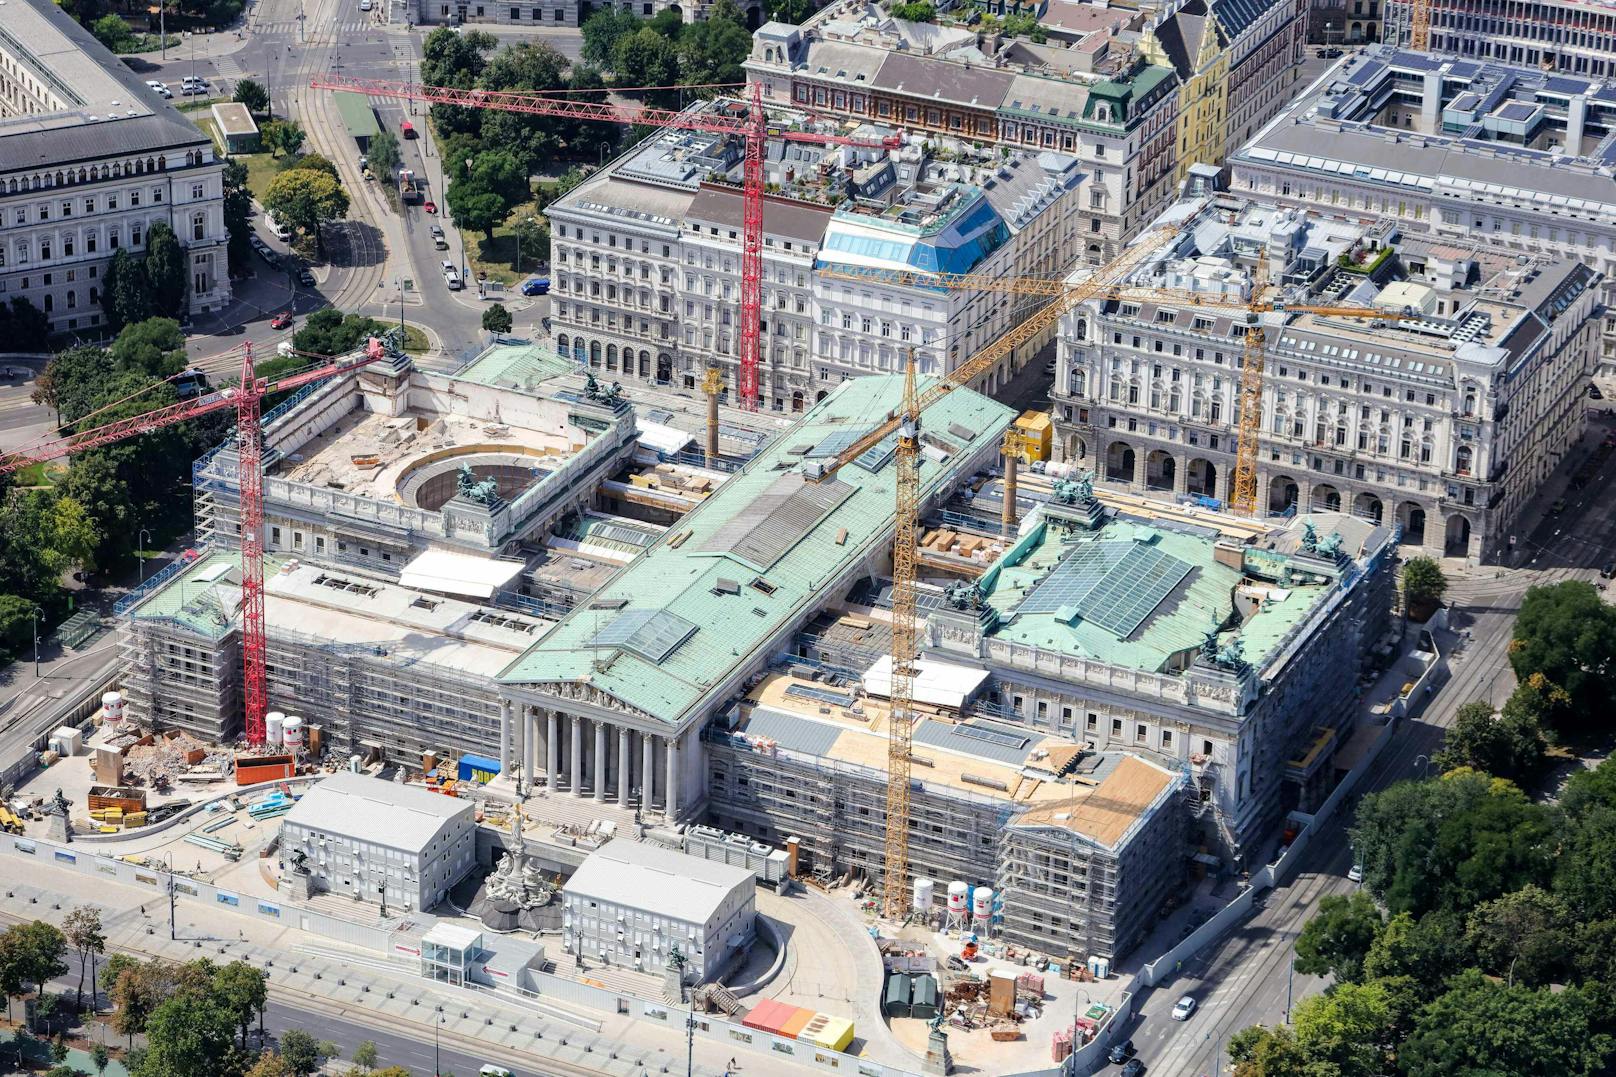 Blick auf die Baustelle beim Parlament (2019)